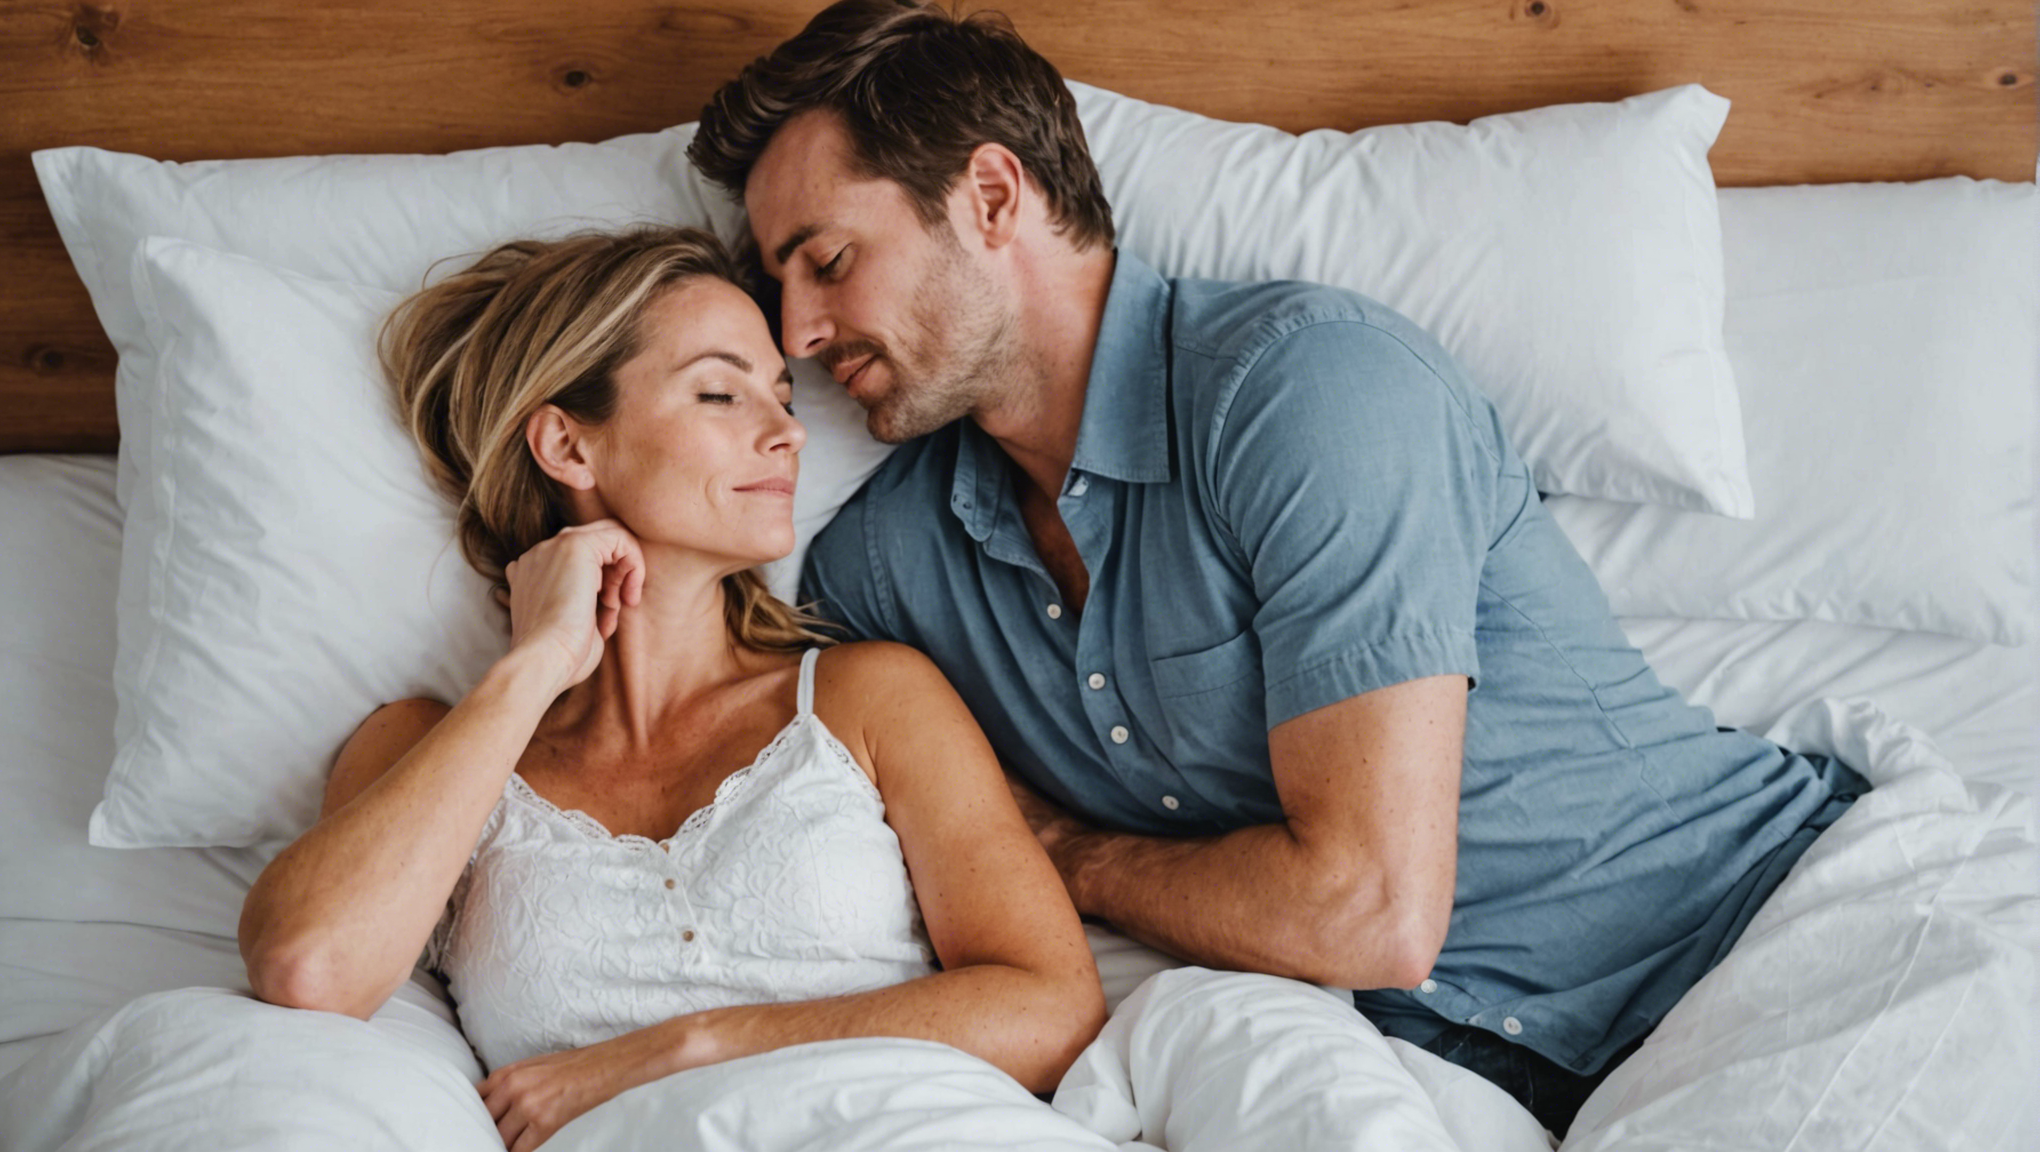 découvrez quelle est la meilleure position pour dormir en couple et améliorez la qualité de votre sommeil. conseils pour trouver le confort et l'harmonie pendant la nuit.